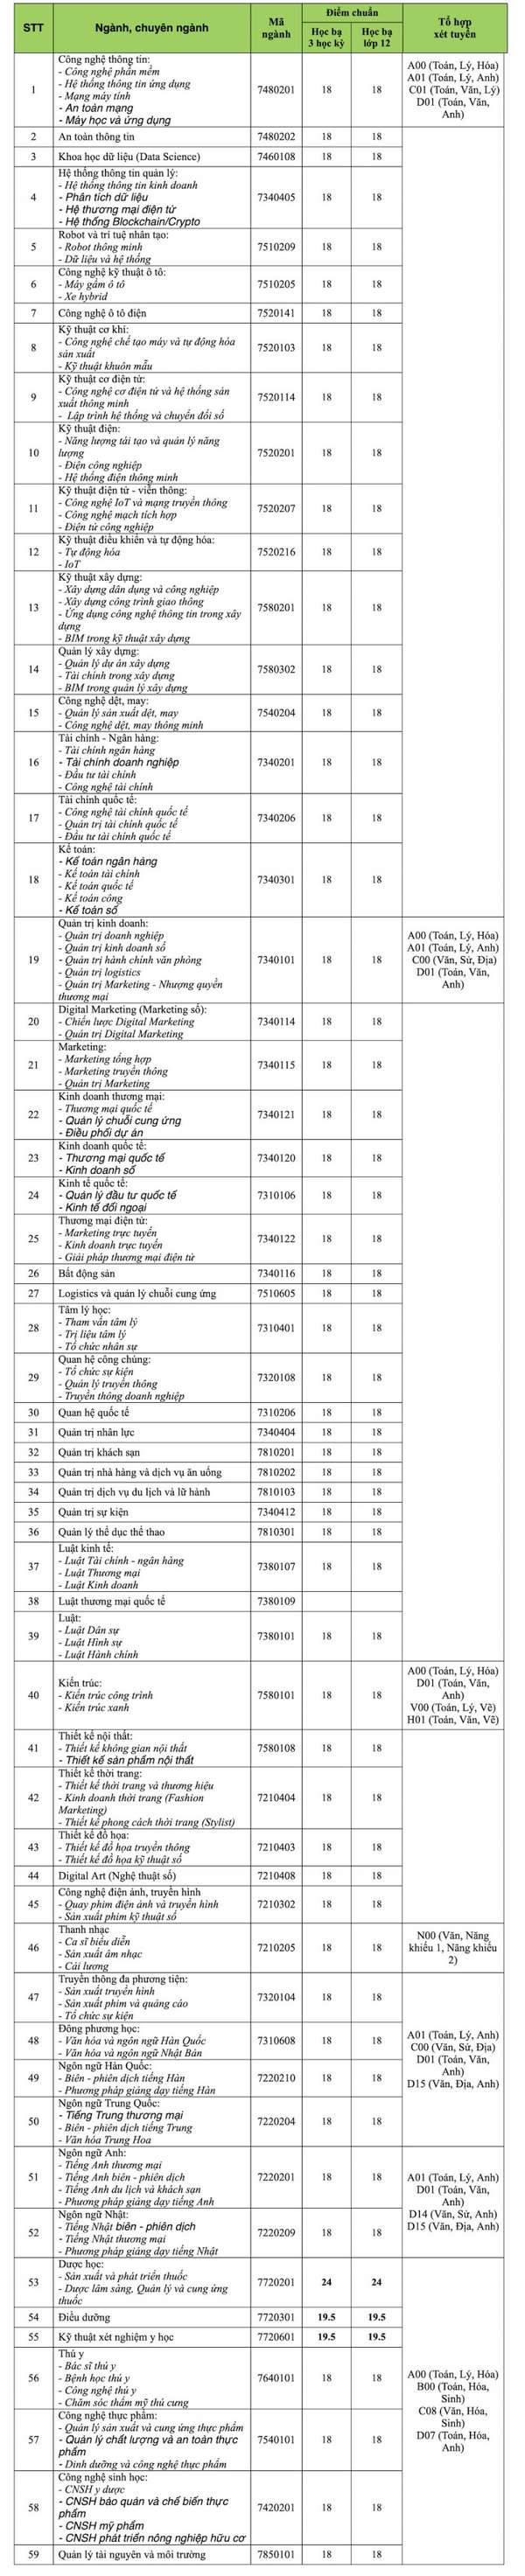 Danh sách trường đại học công bố điểm chuẩn xét tuyển học bạ